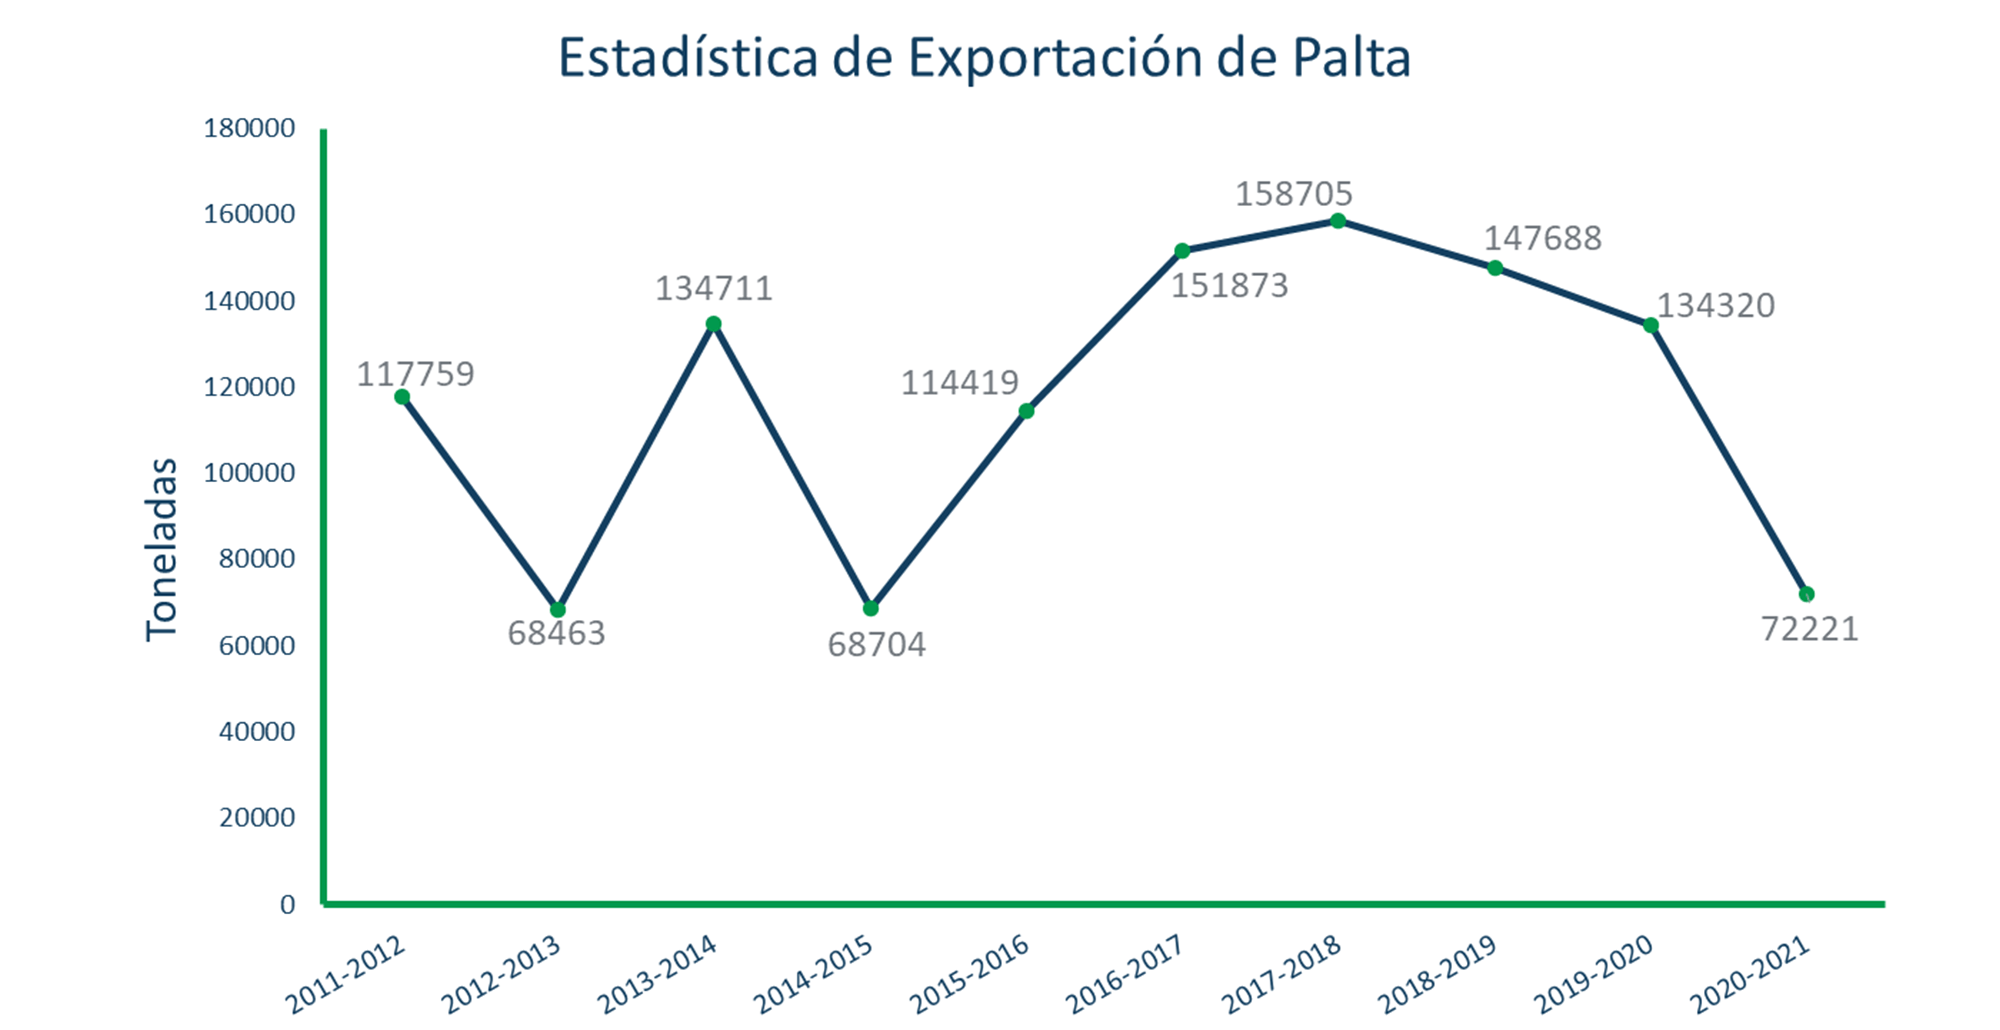 Export statistics